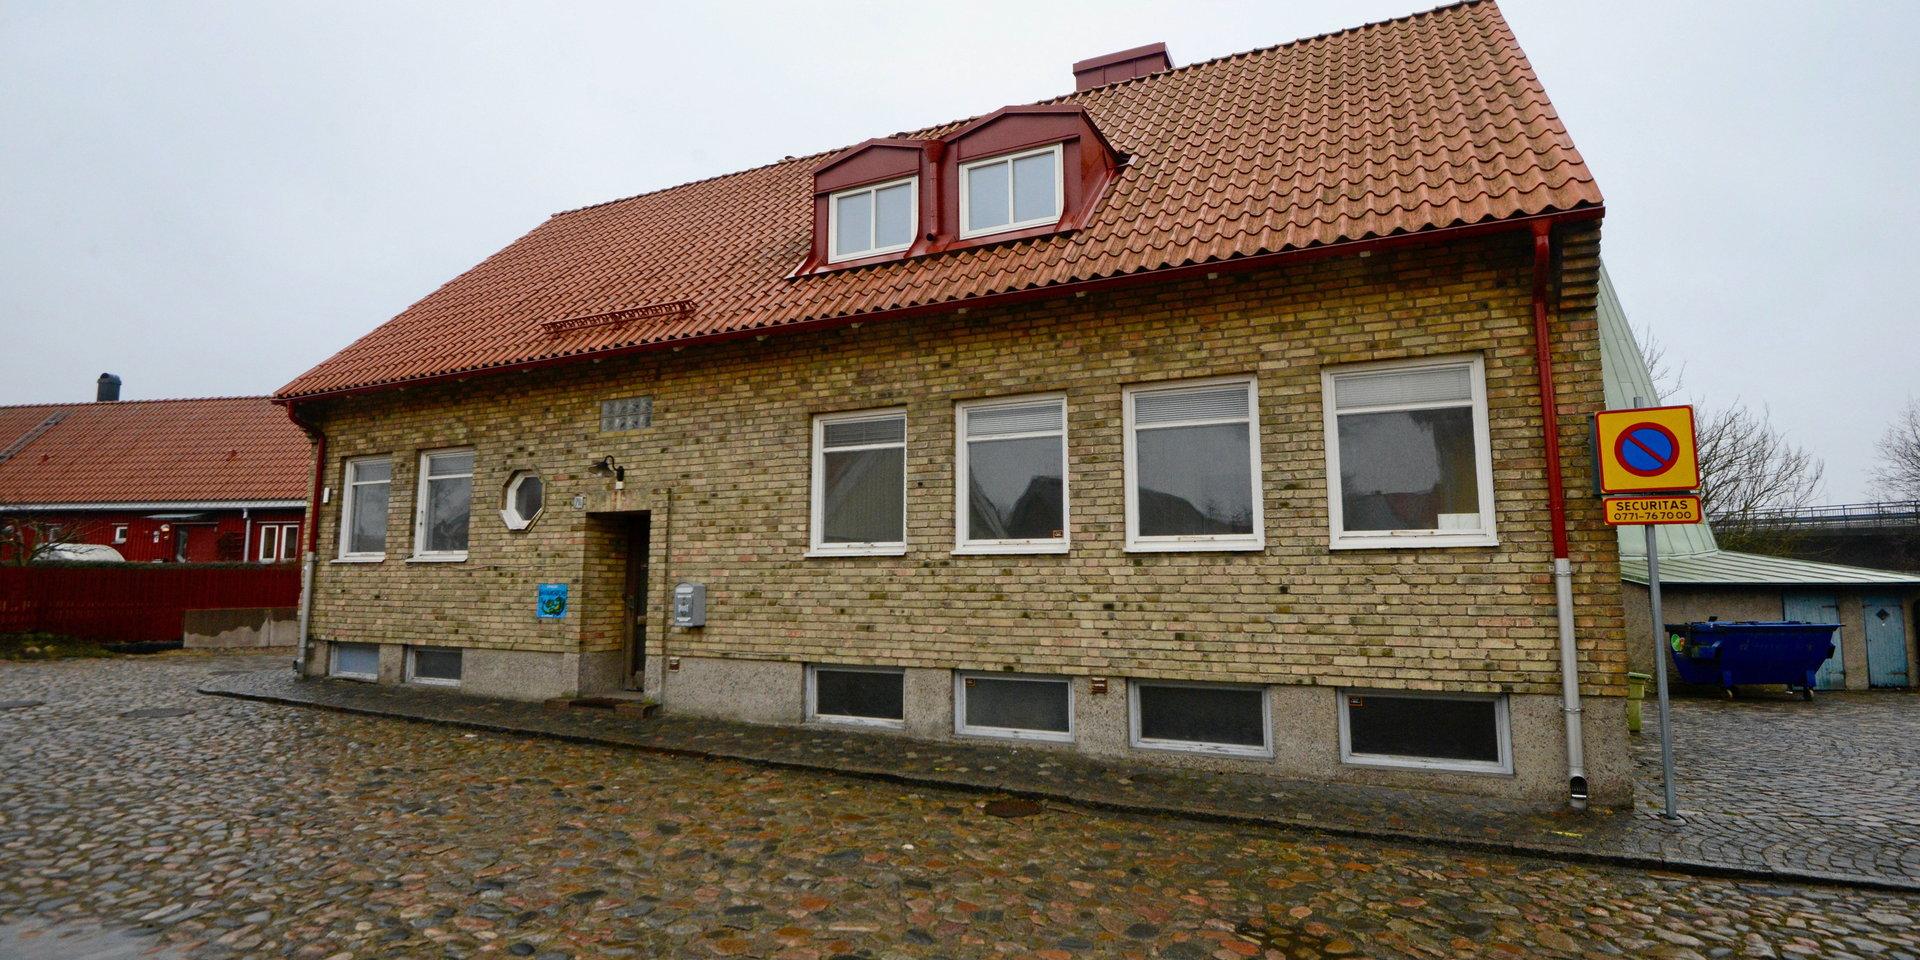 Museet skulle synas bättre om tegelbyggnaden revs, likaså Fälstströmska gården och Hindströmska huset på andra sidan gatan, skriver insändarskribenten.